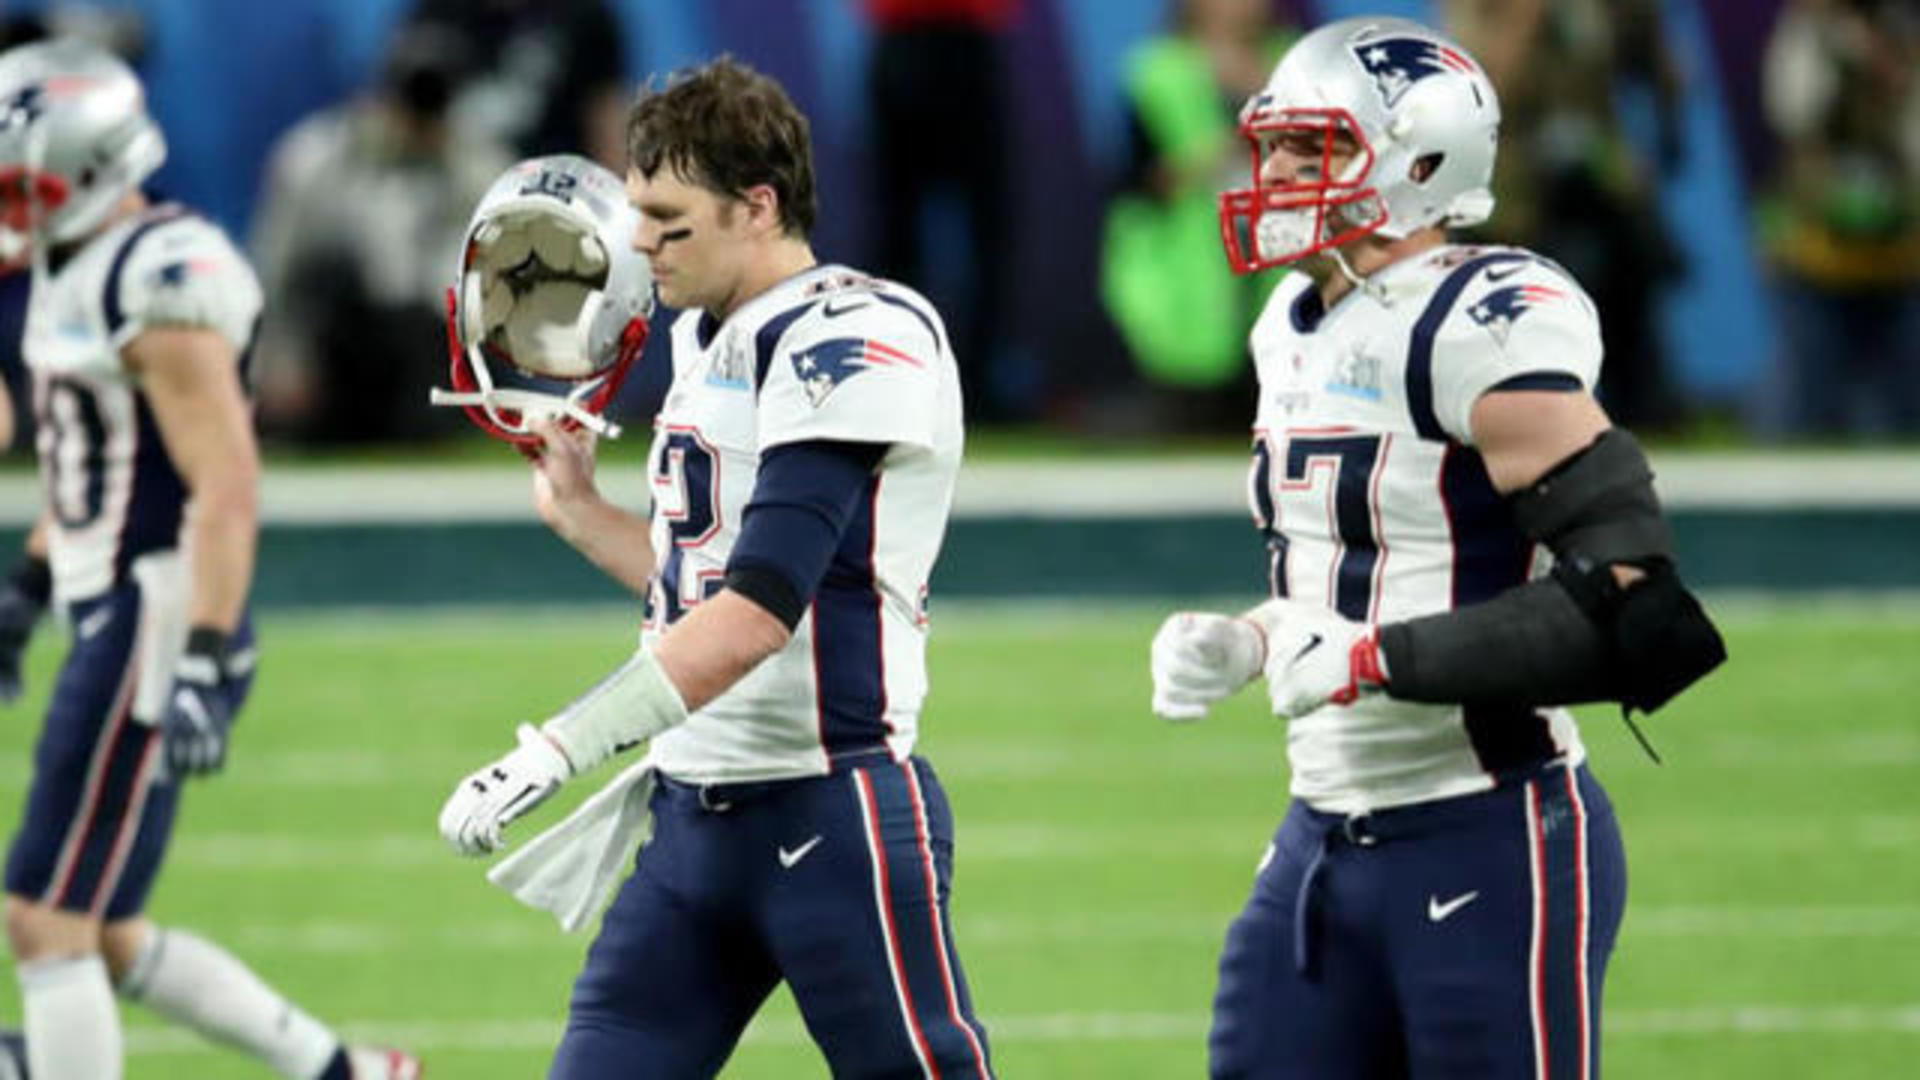 CBS Sports on X: Patriots vs. Rams Super Bowl LIII is set. https